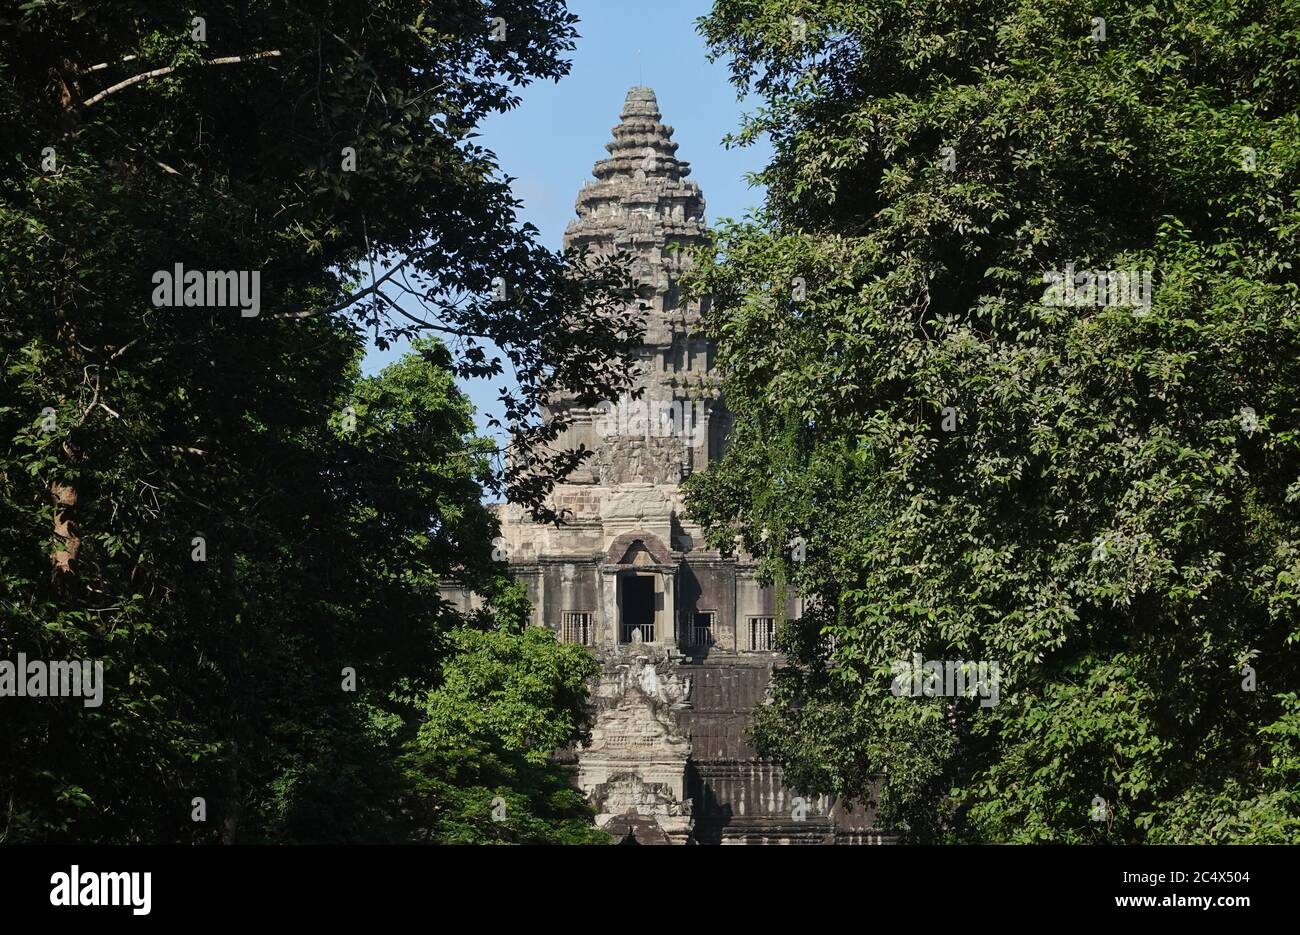 23 octobre 2019, Cambodge, Siem REAB : le chemin vers le temple principal d'Angkor Wat. Le roi Suryavarman a construit au XIIe siècle le temple, maintenant symbole national. Angkor Wat est mieux conservé dans le complexe et a toujours une signification religieuse. Photo: Soeren Stache/dpa-Zentralbild/ZB Banque D'Images